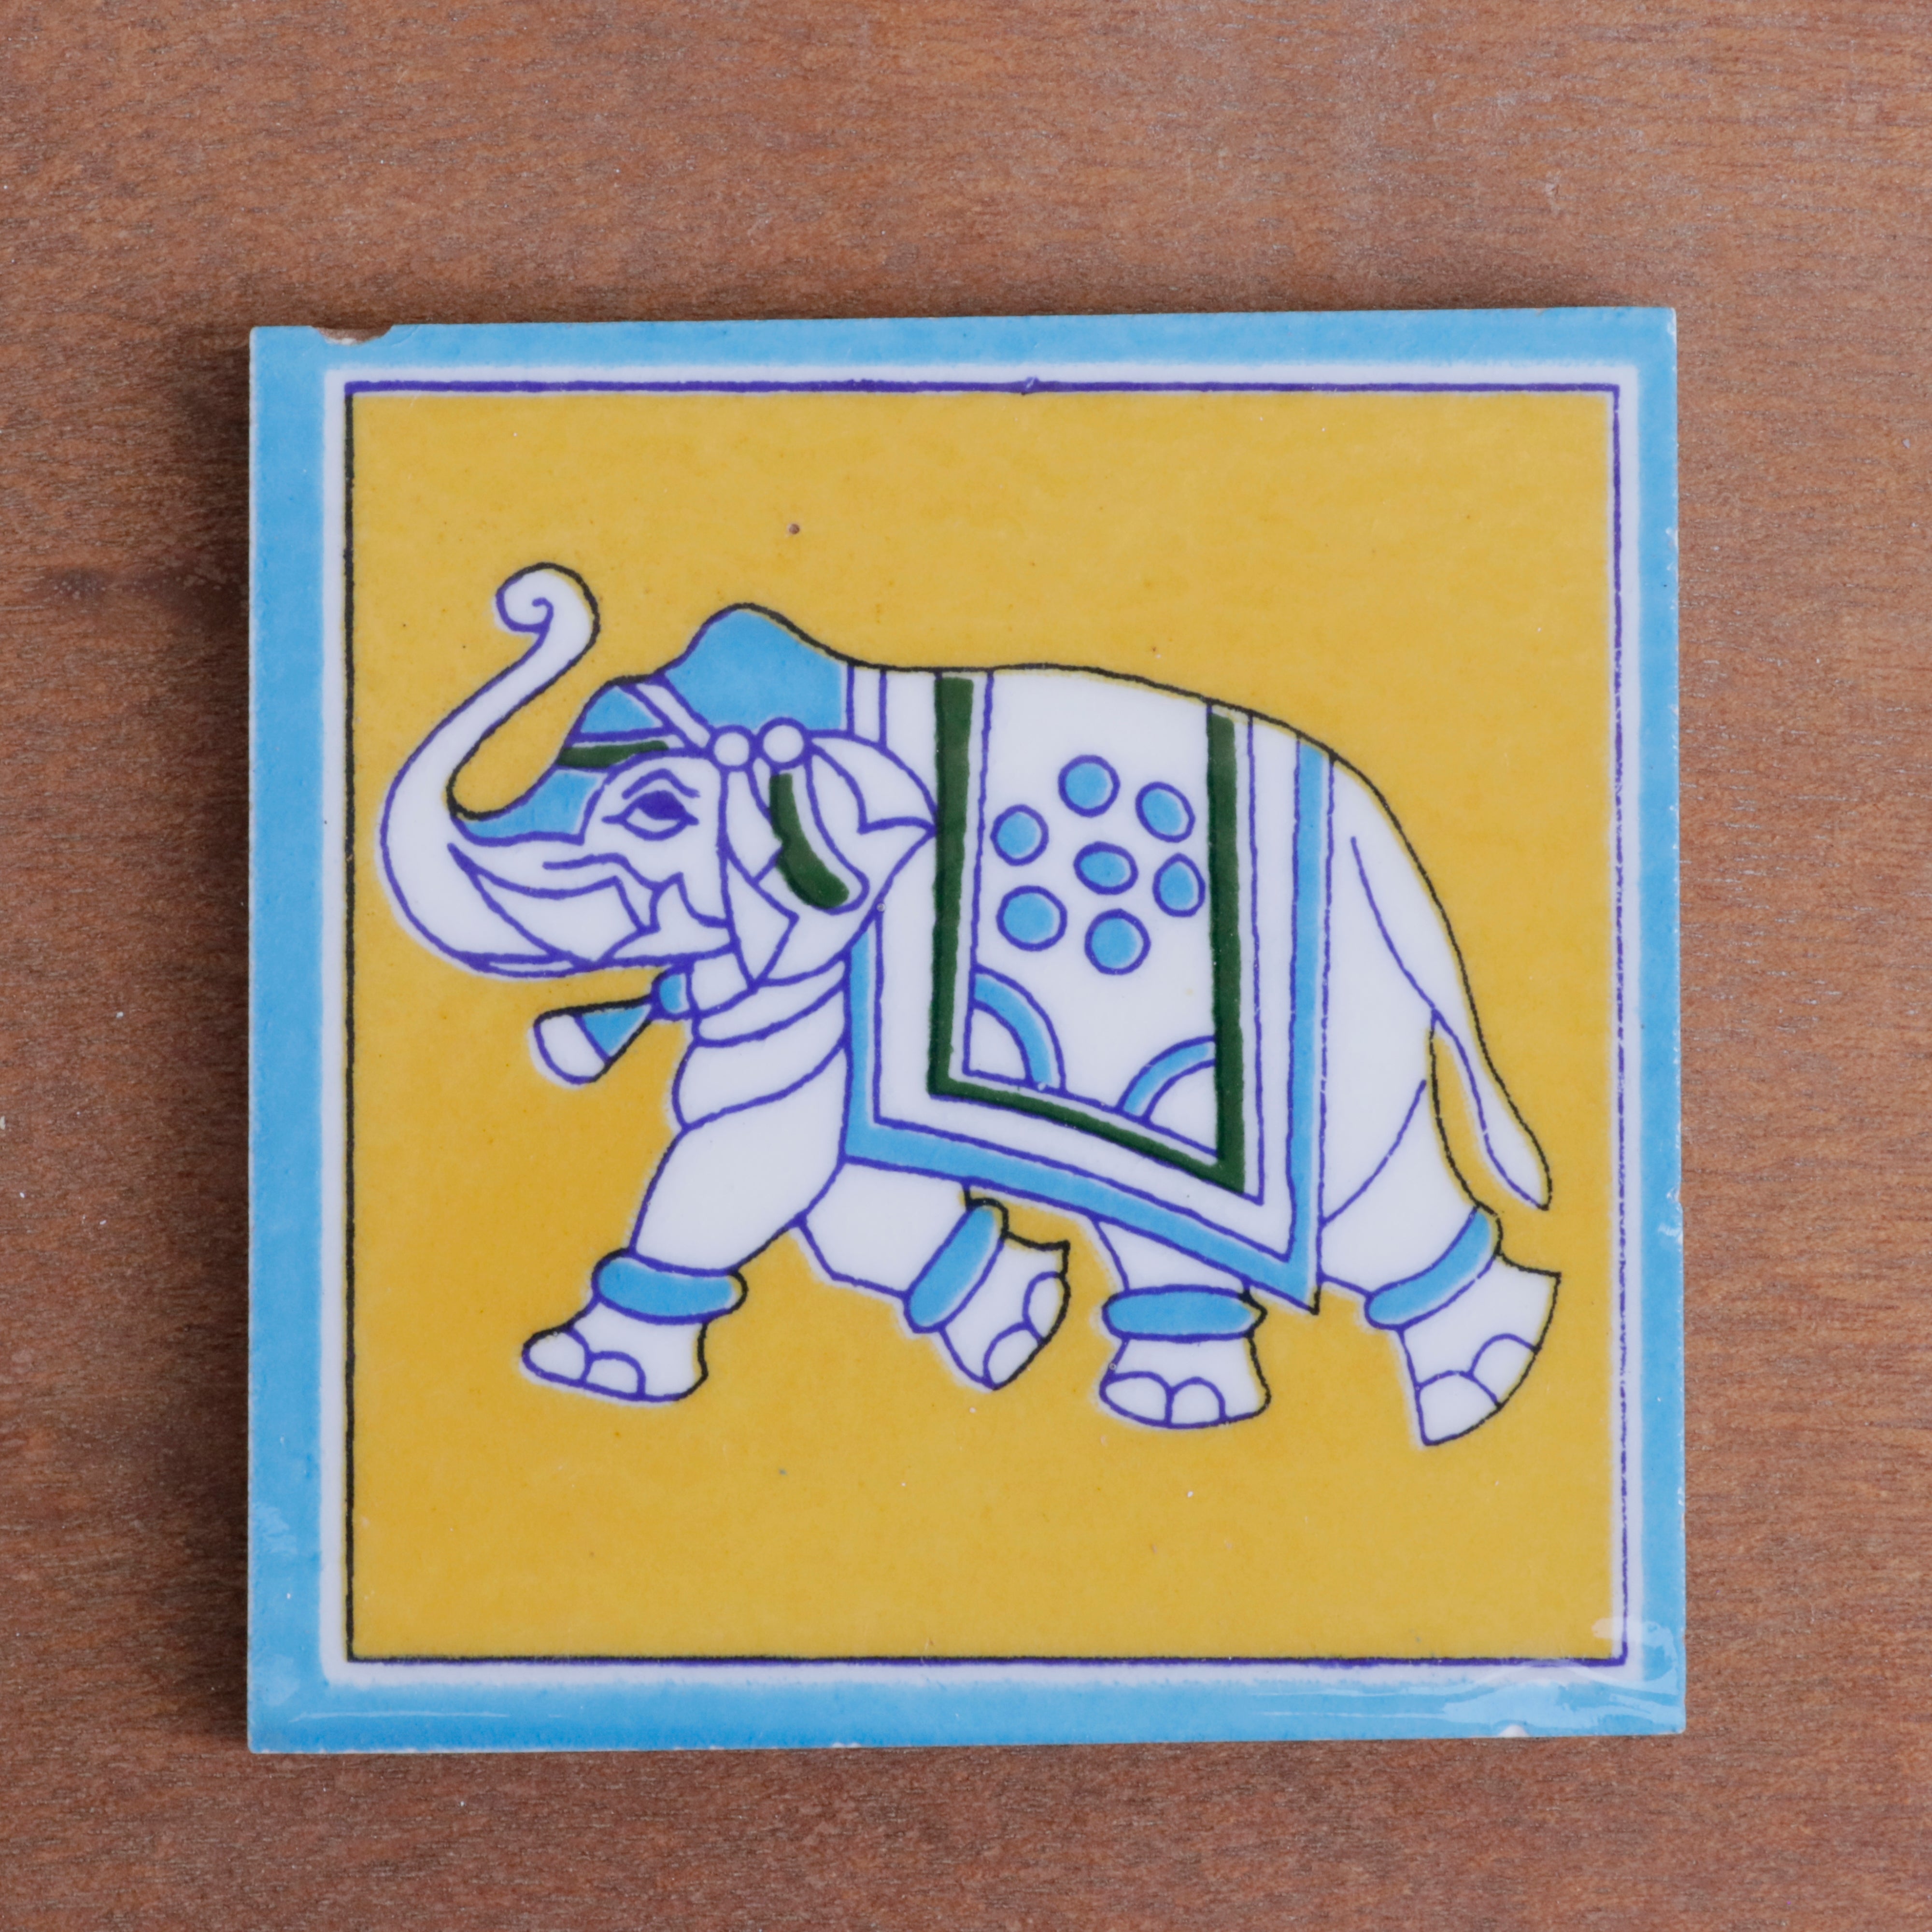 Royal Cultural Elephant Designed Ceramic Square Tile Set of 2 Ceramic Tile